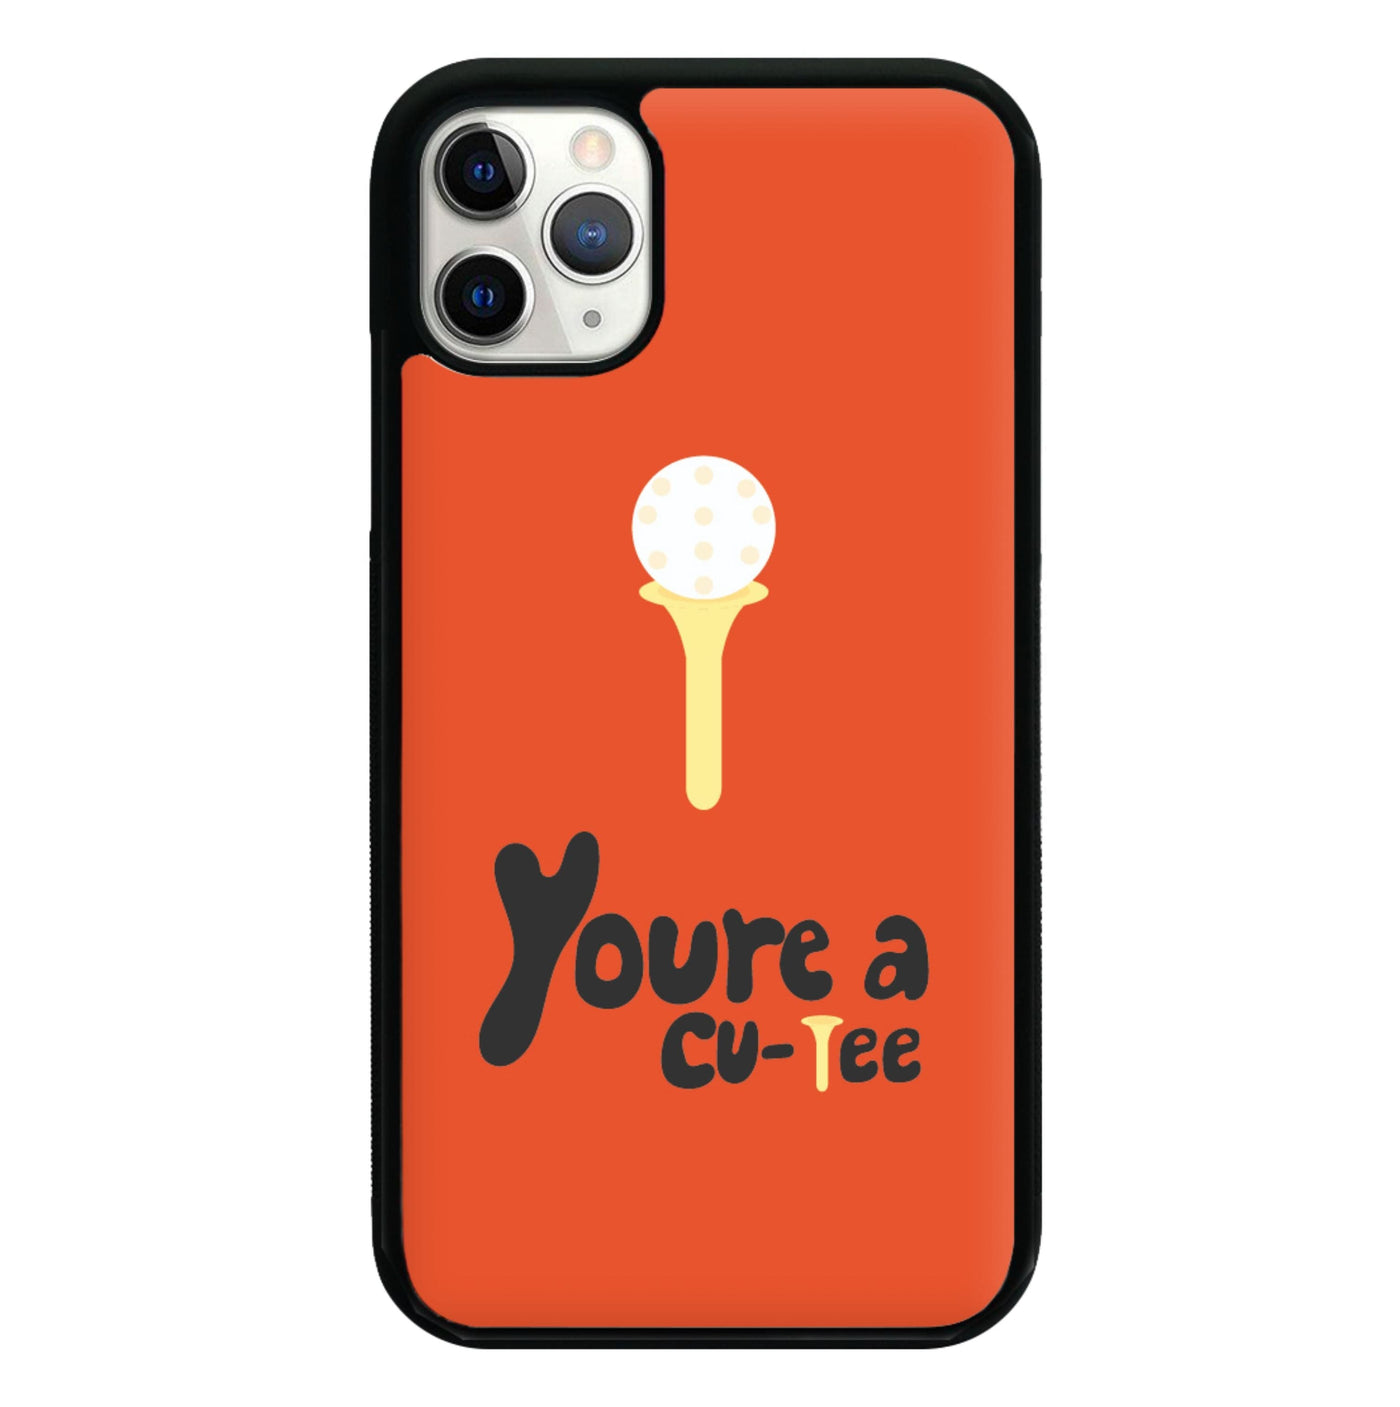 You're a cu-tee - Golf Phone Case